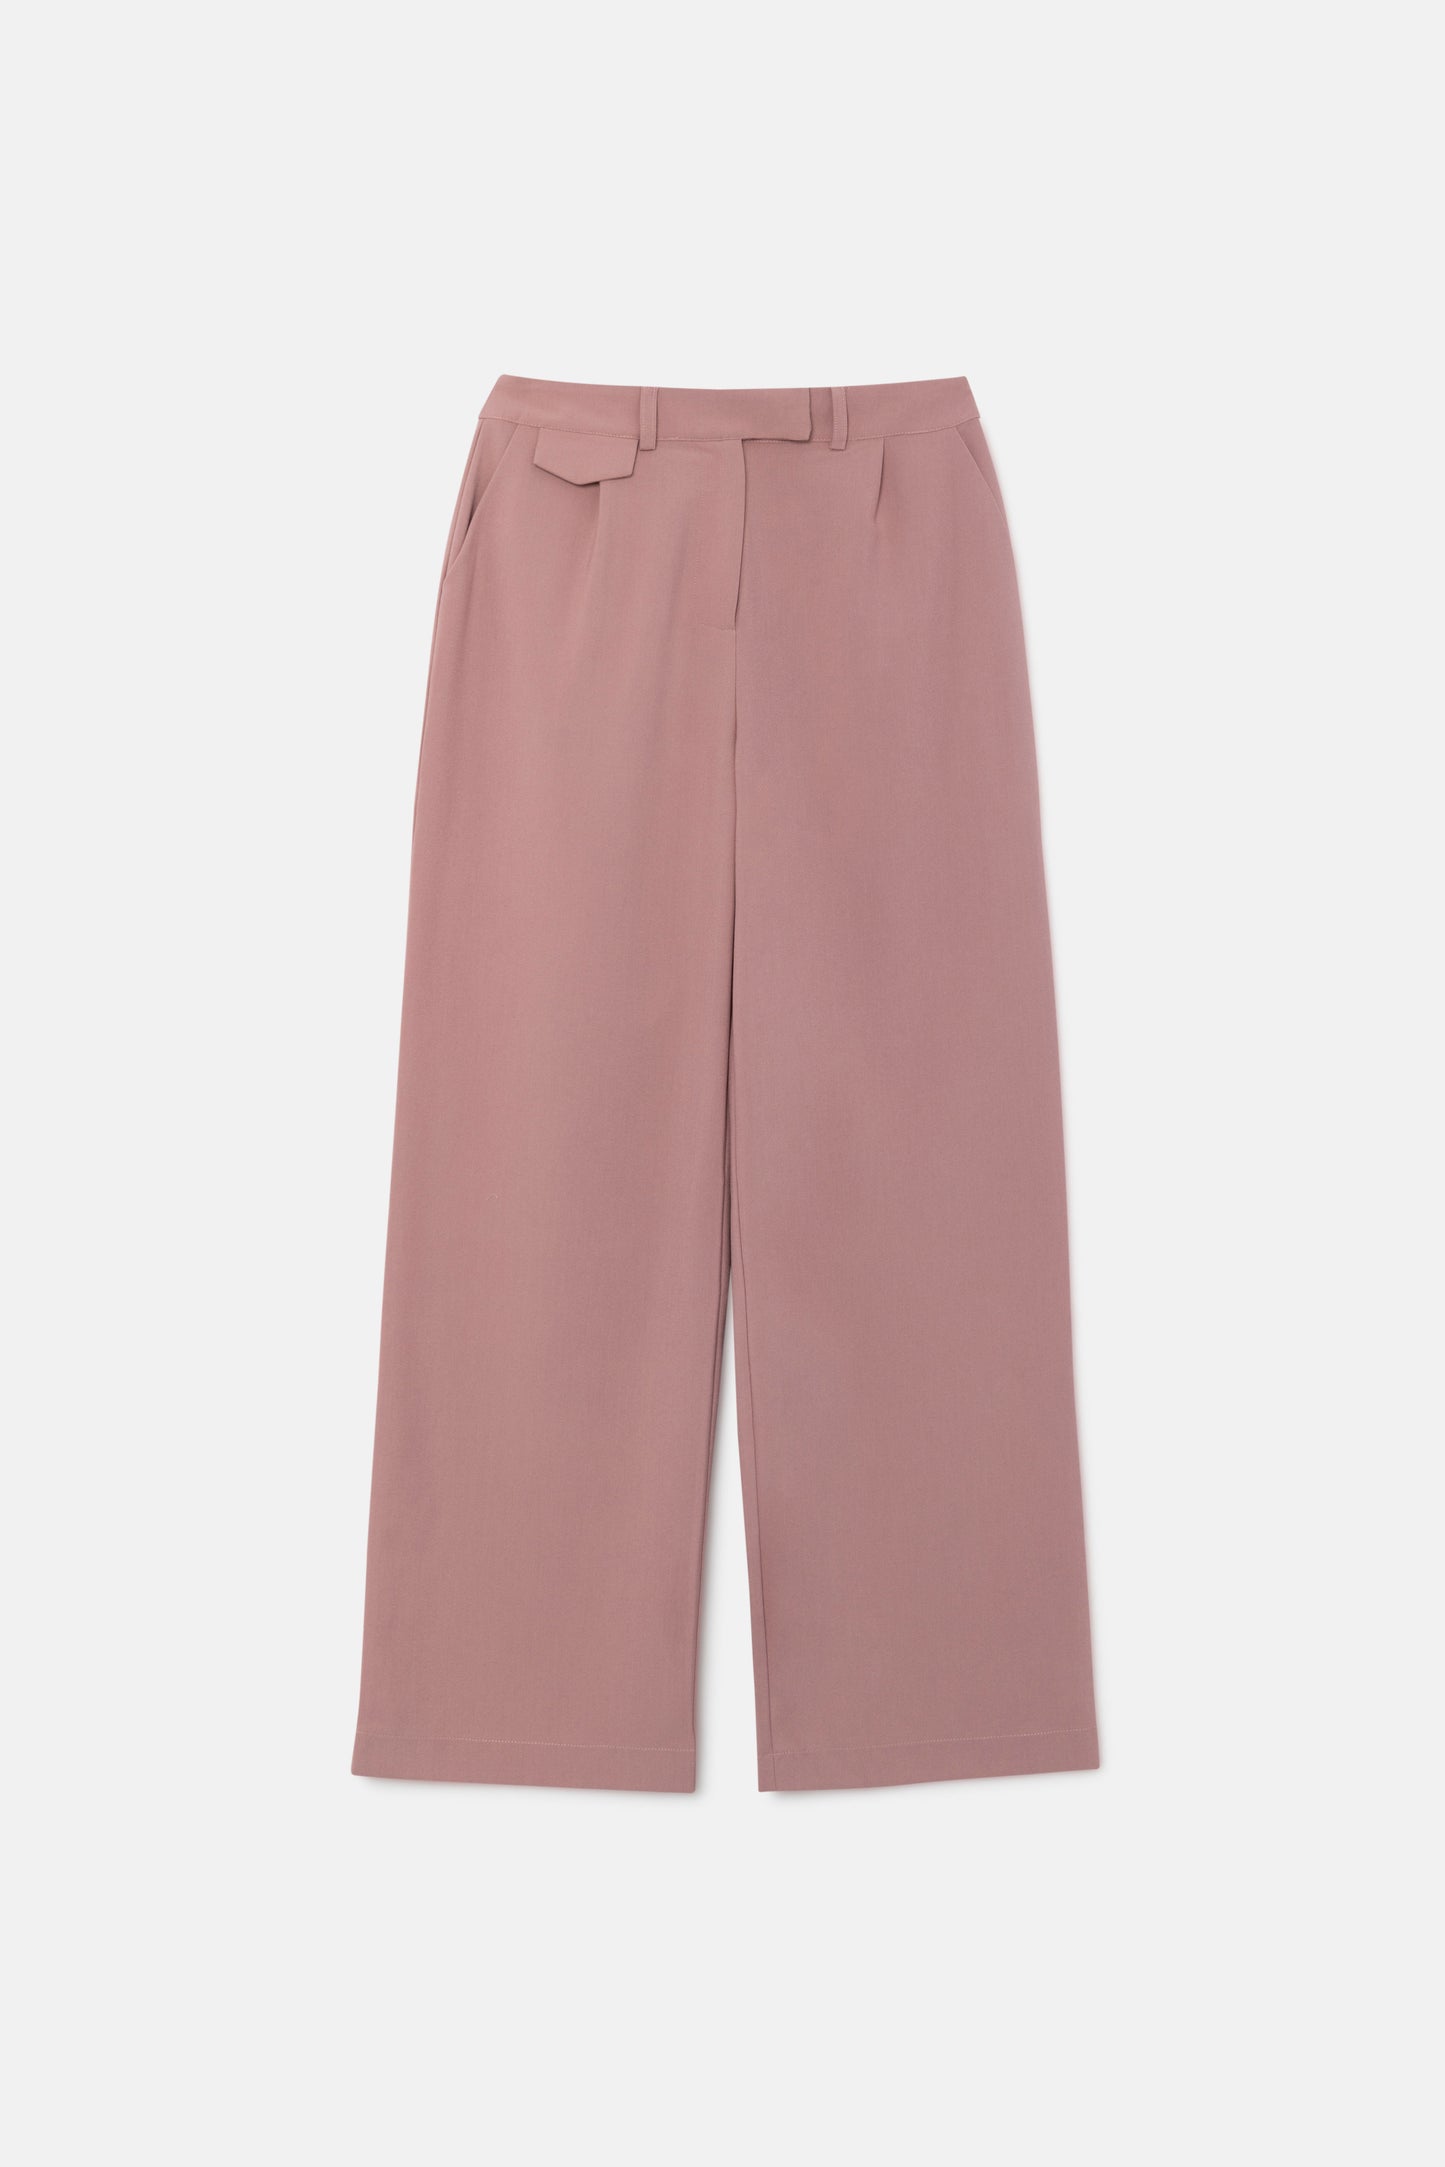 Pink crepe suit pants